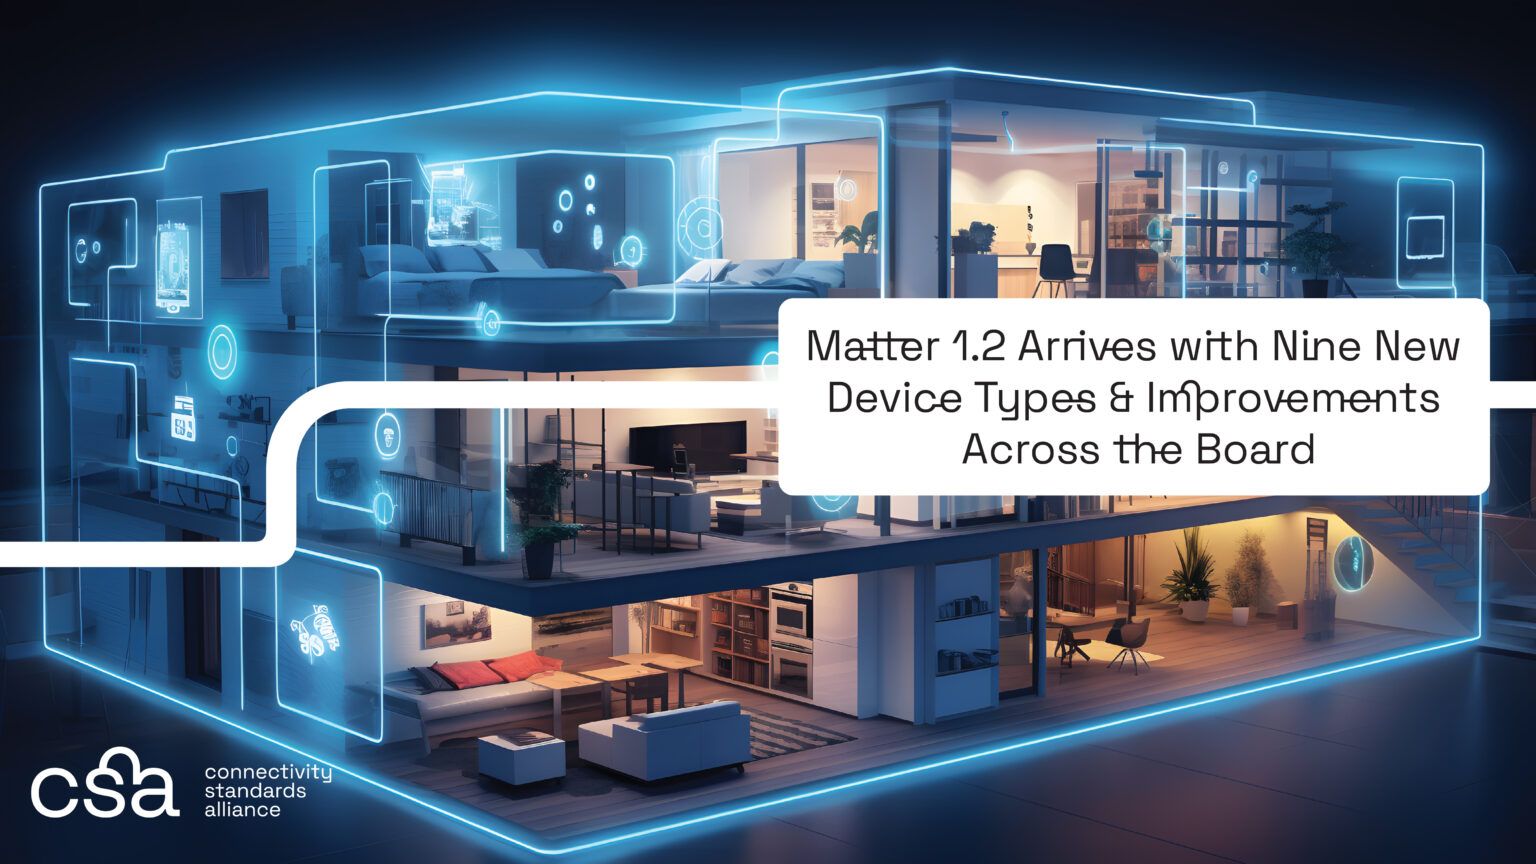 CSA представила Matter 1.2: Новые возможности для «умного дома»